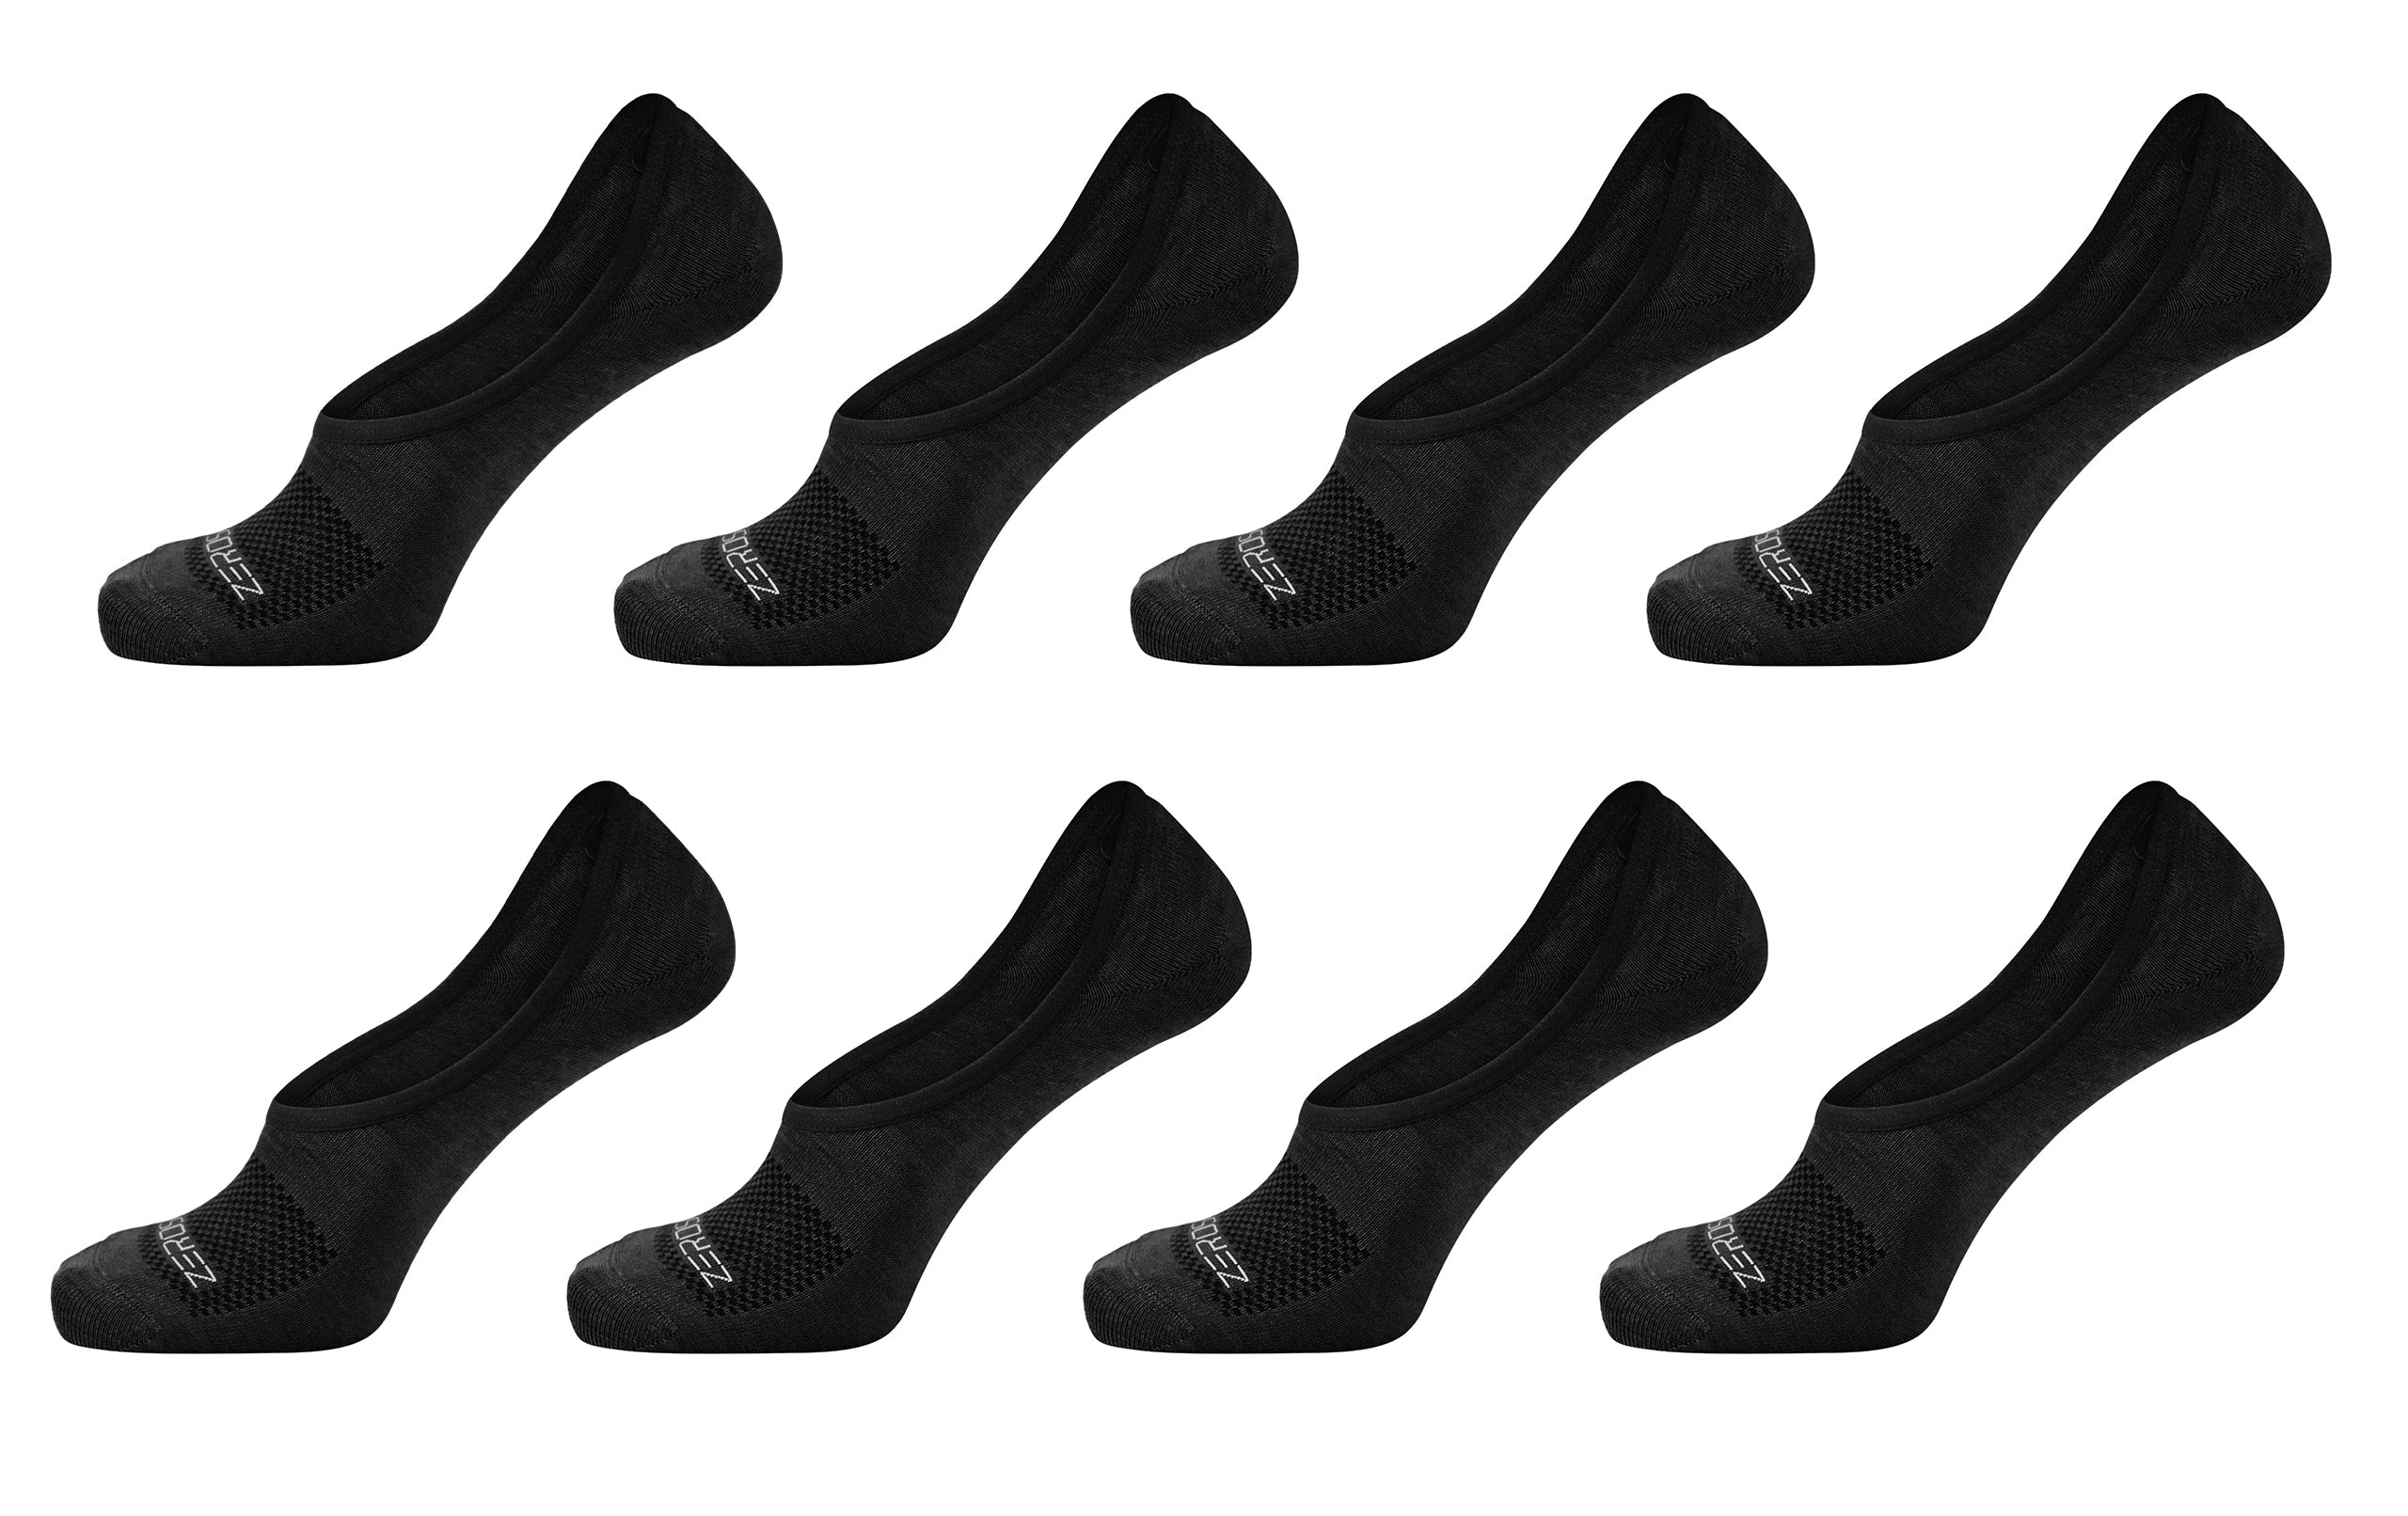 S-MILLENIUM LOW SOCK: Sock sneakers with collapsible heel